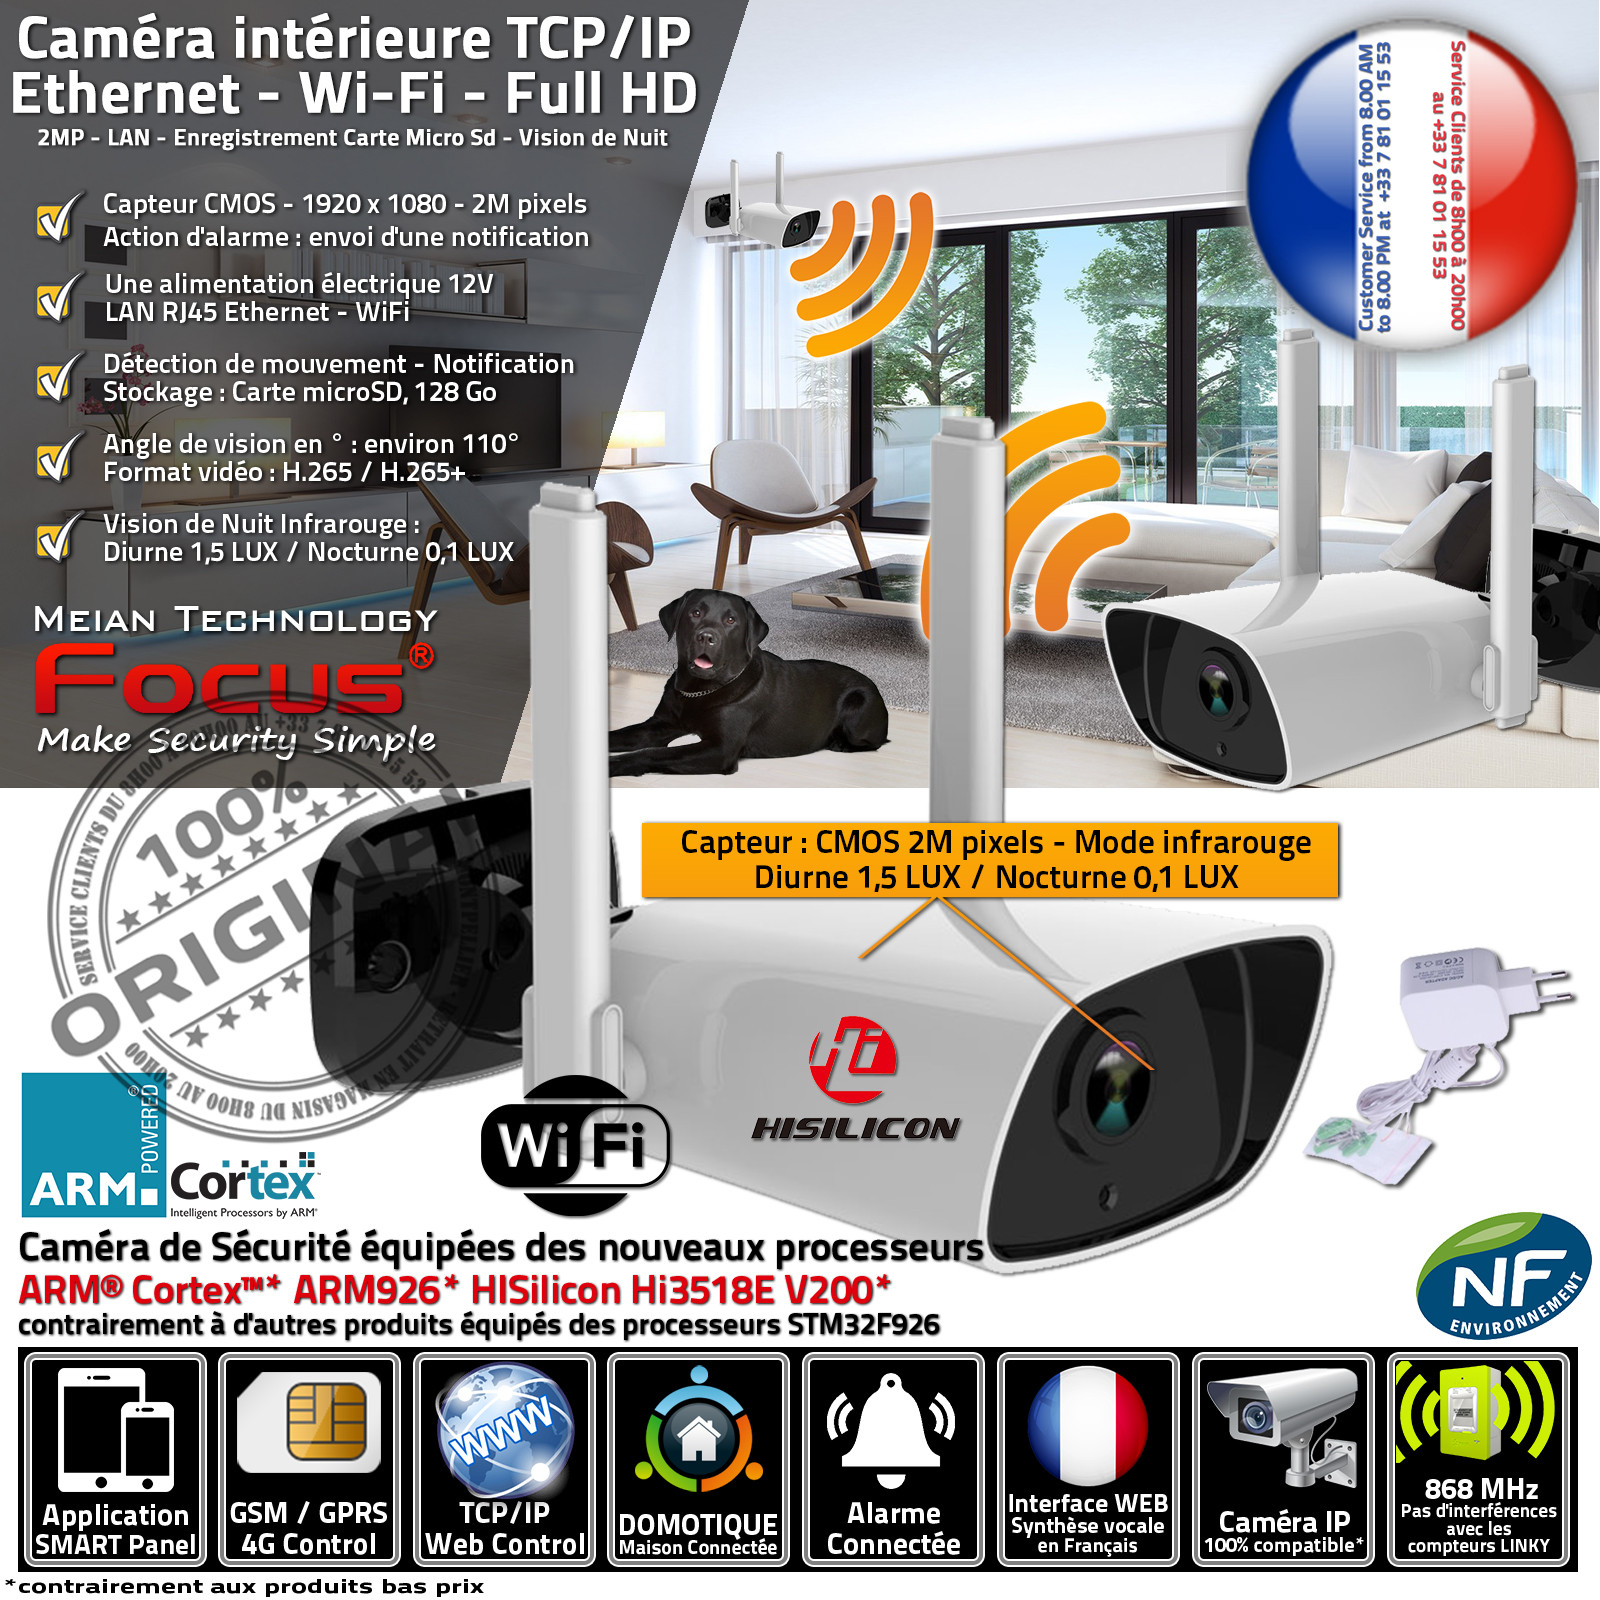 HA-8406 Surveiller sa Maison à Distance sur Téléphone Caméra Extérieure  Protection Vision de Nuit Détecteur Mouvement RJ45 Wi-Fi